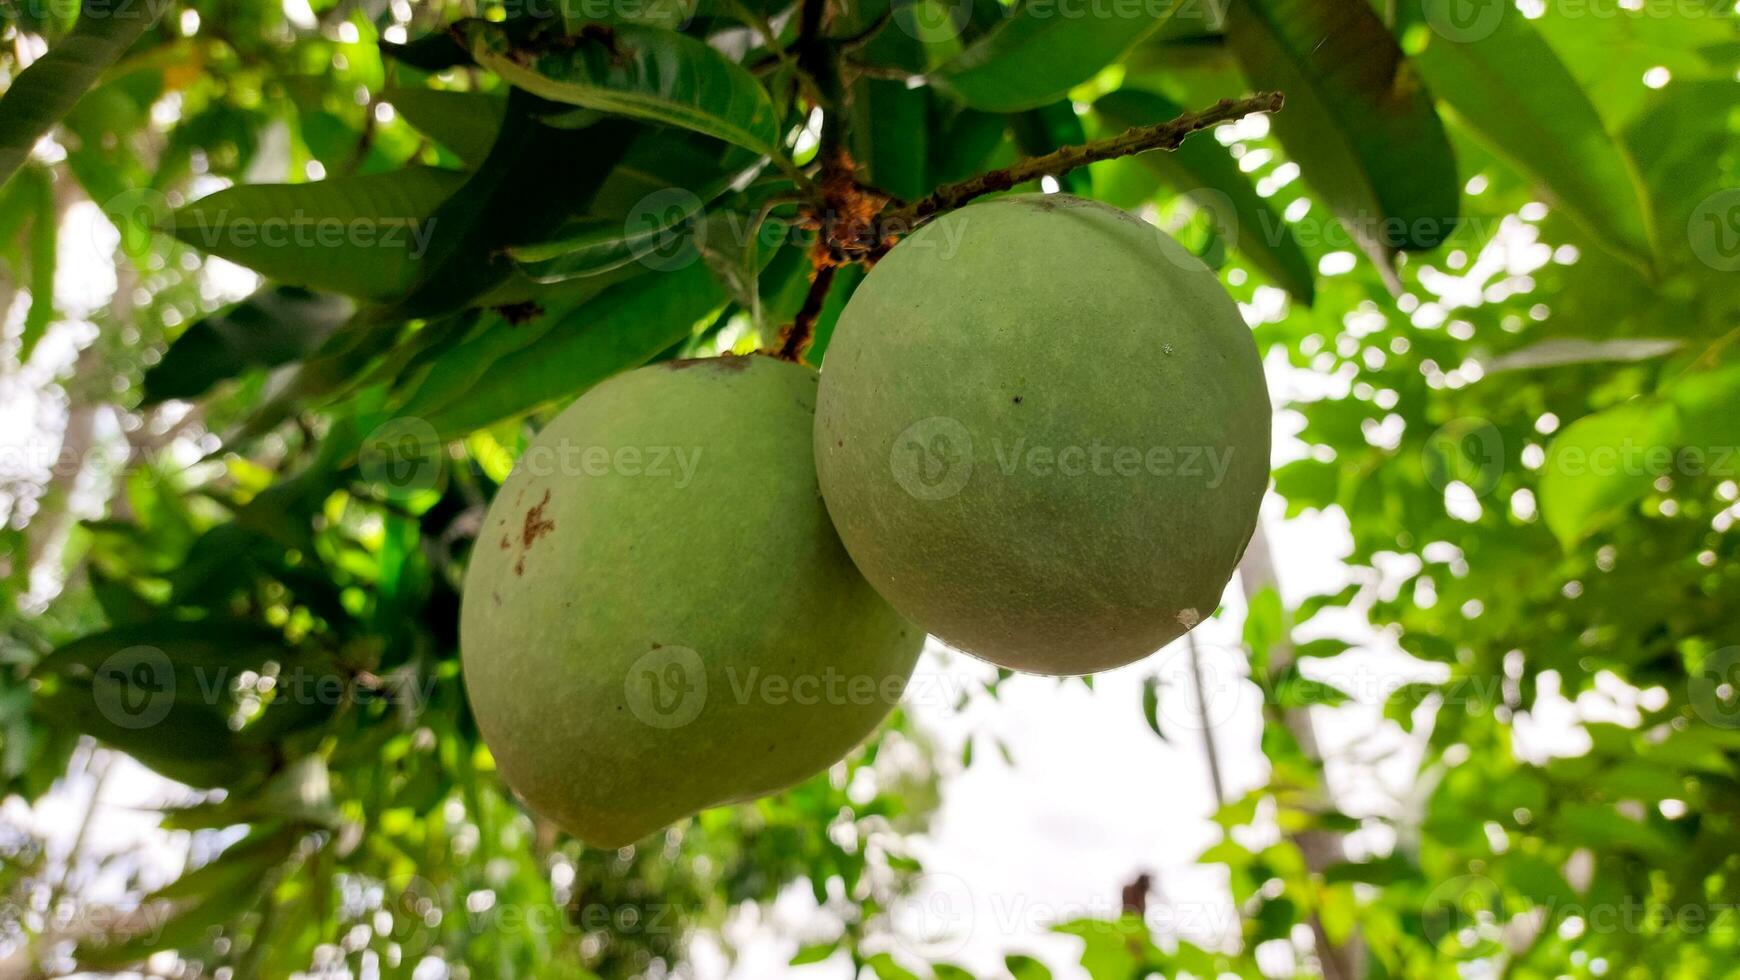 stelletje groene rijpe mango op boom in de tuin. selectieve focus foto